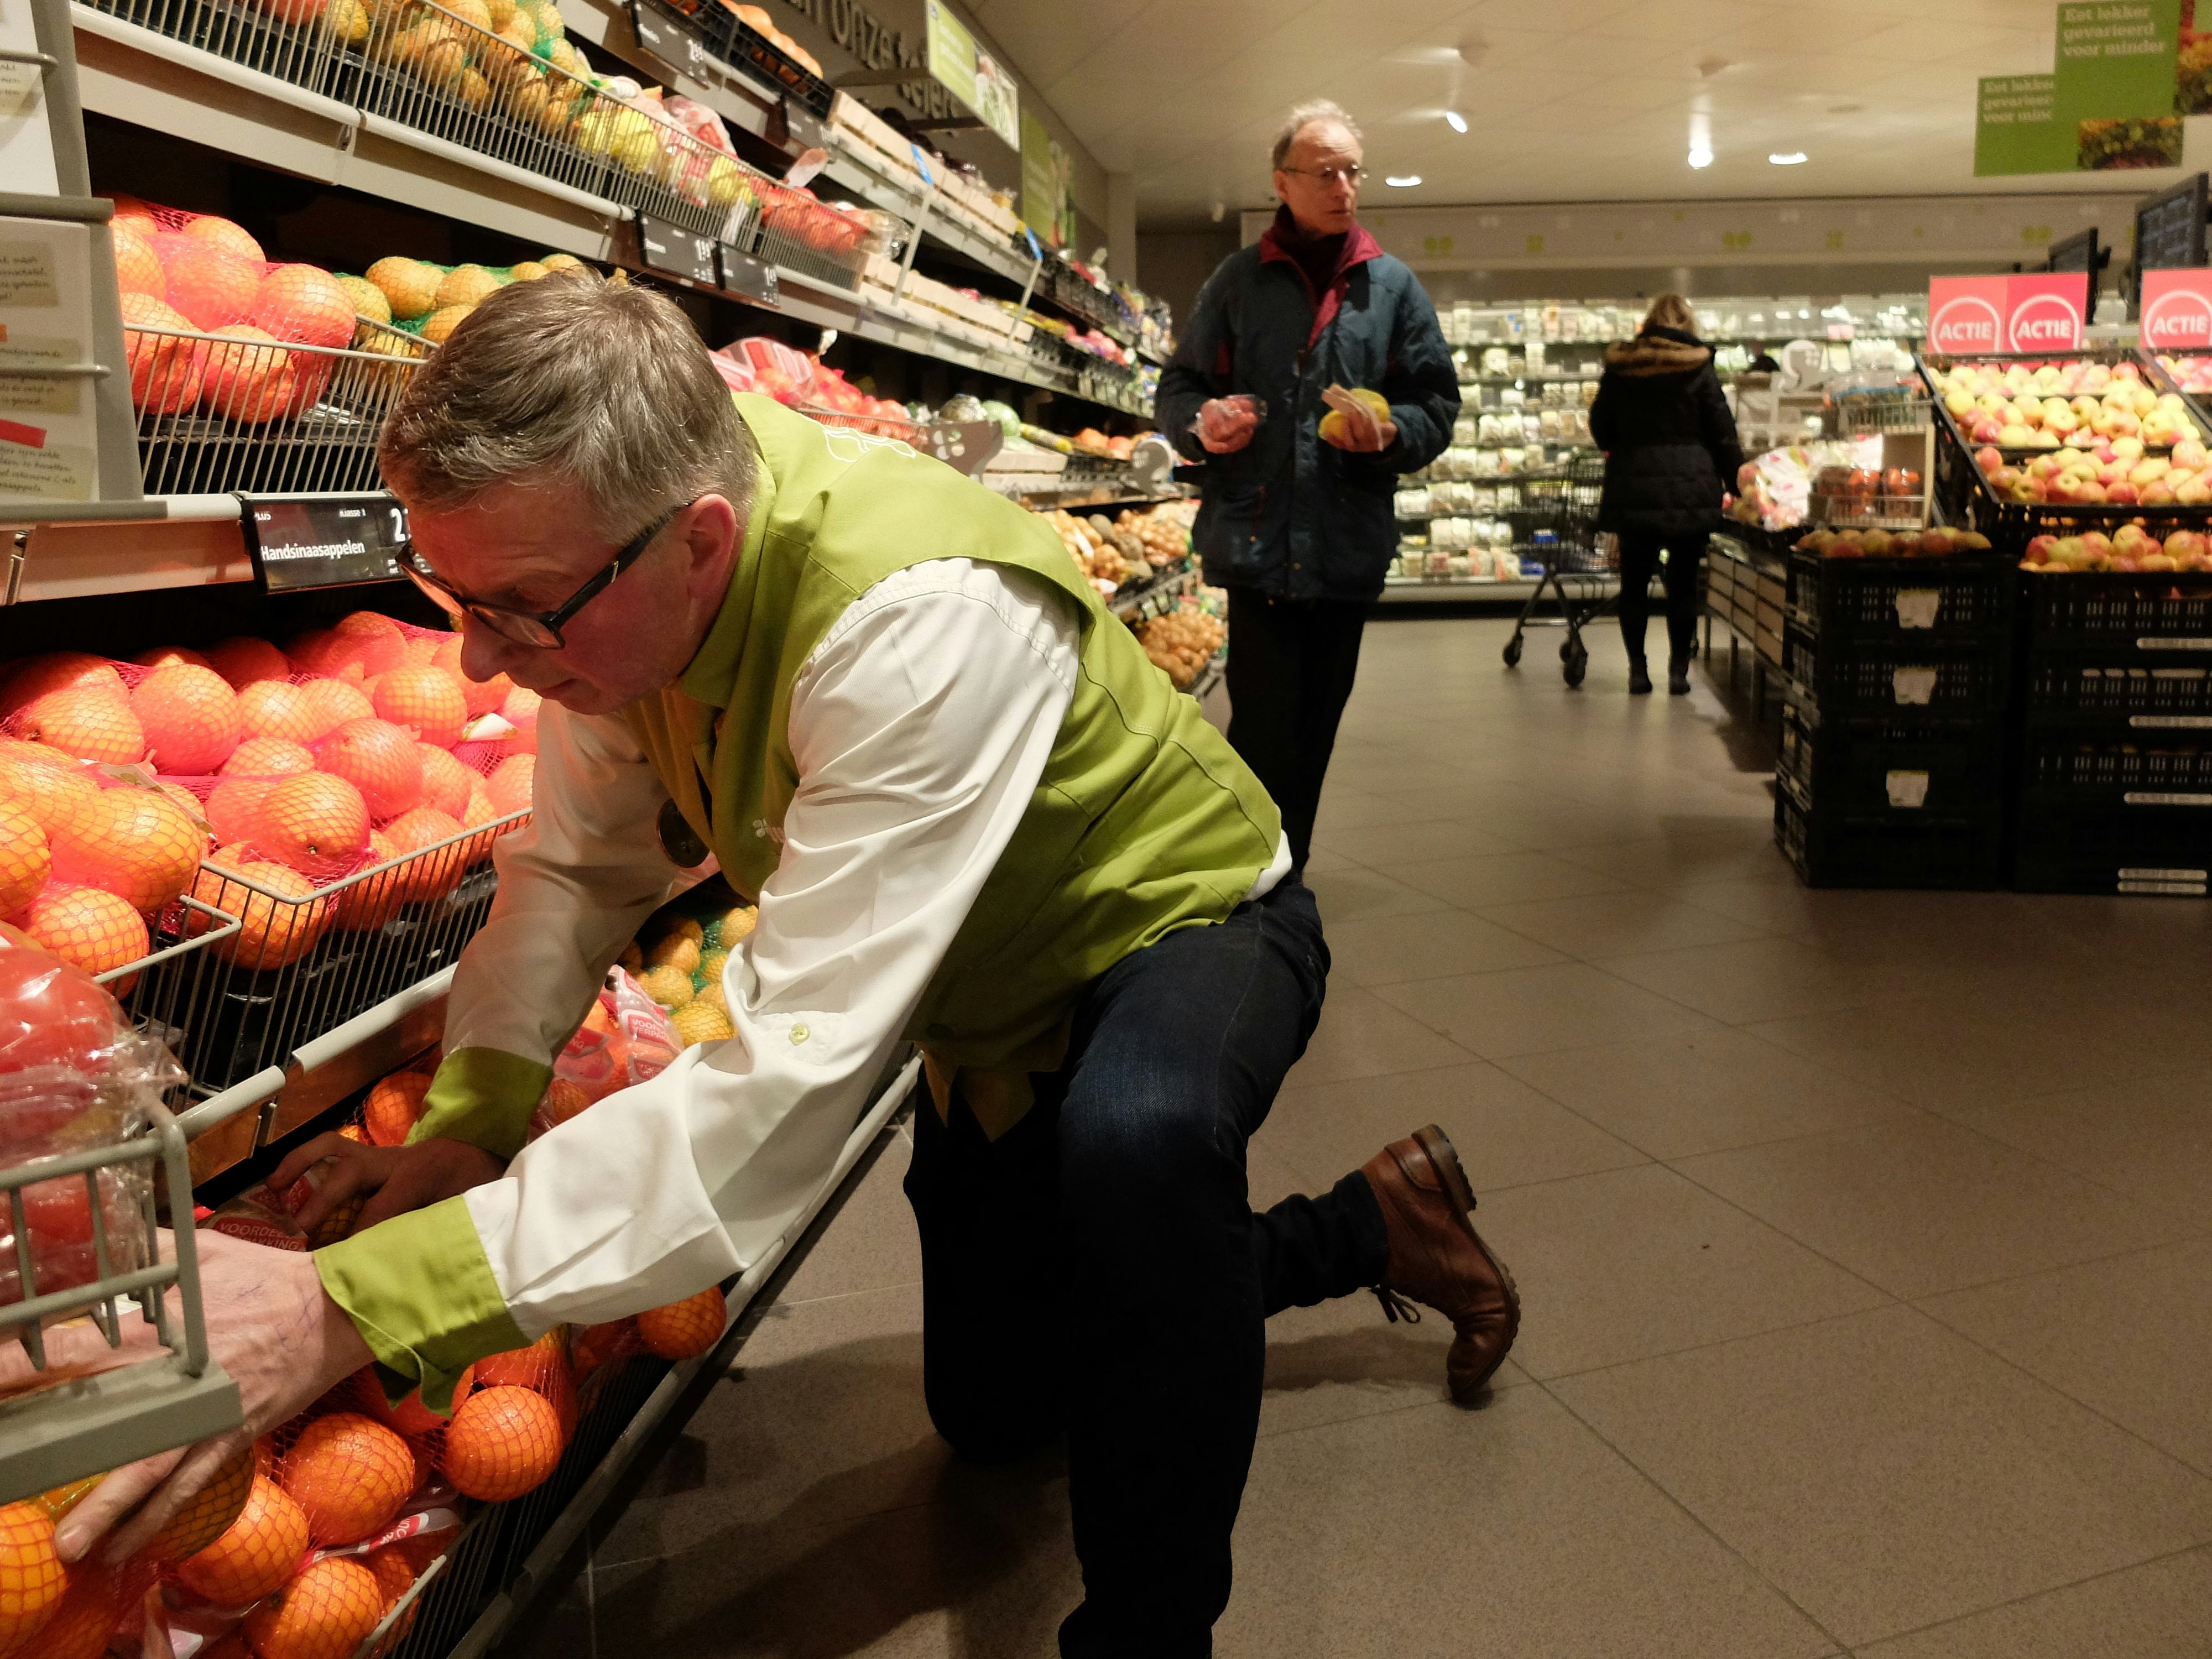 Food motor achter omzetgroei retailsector